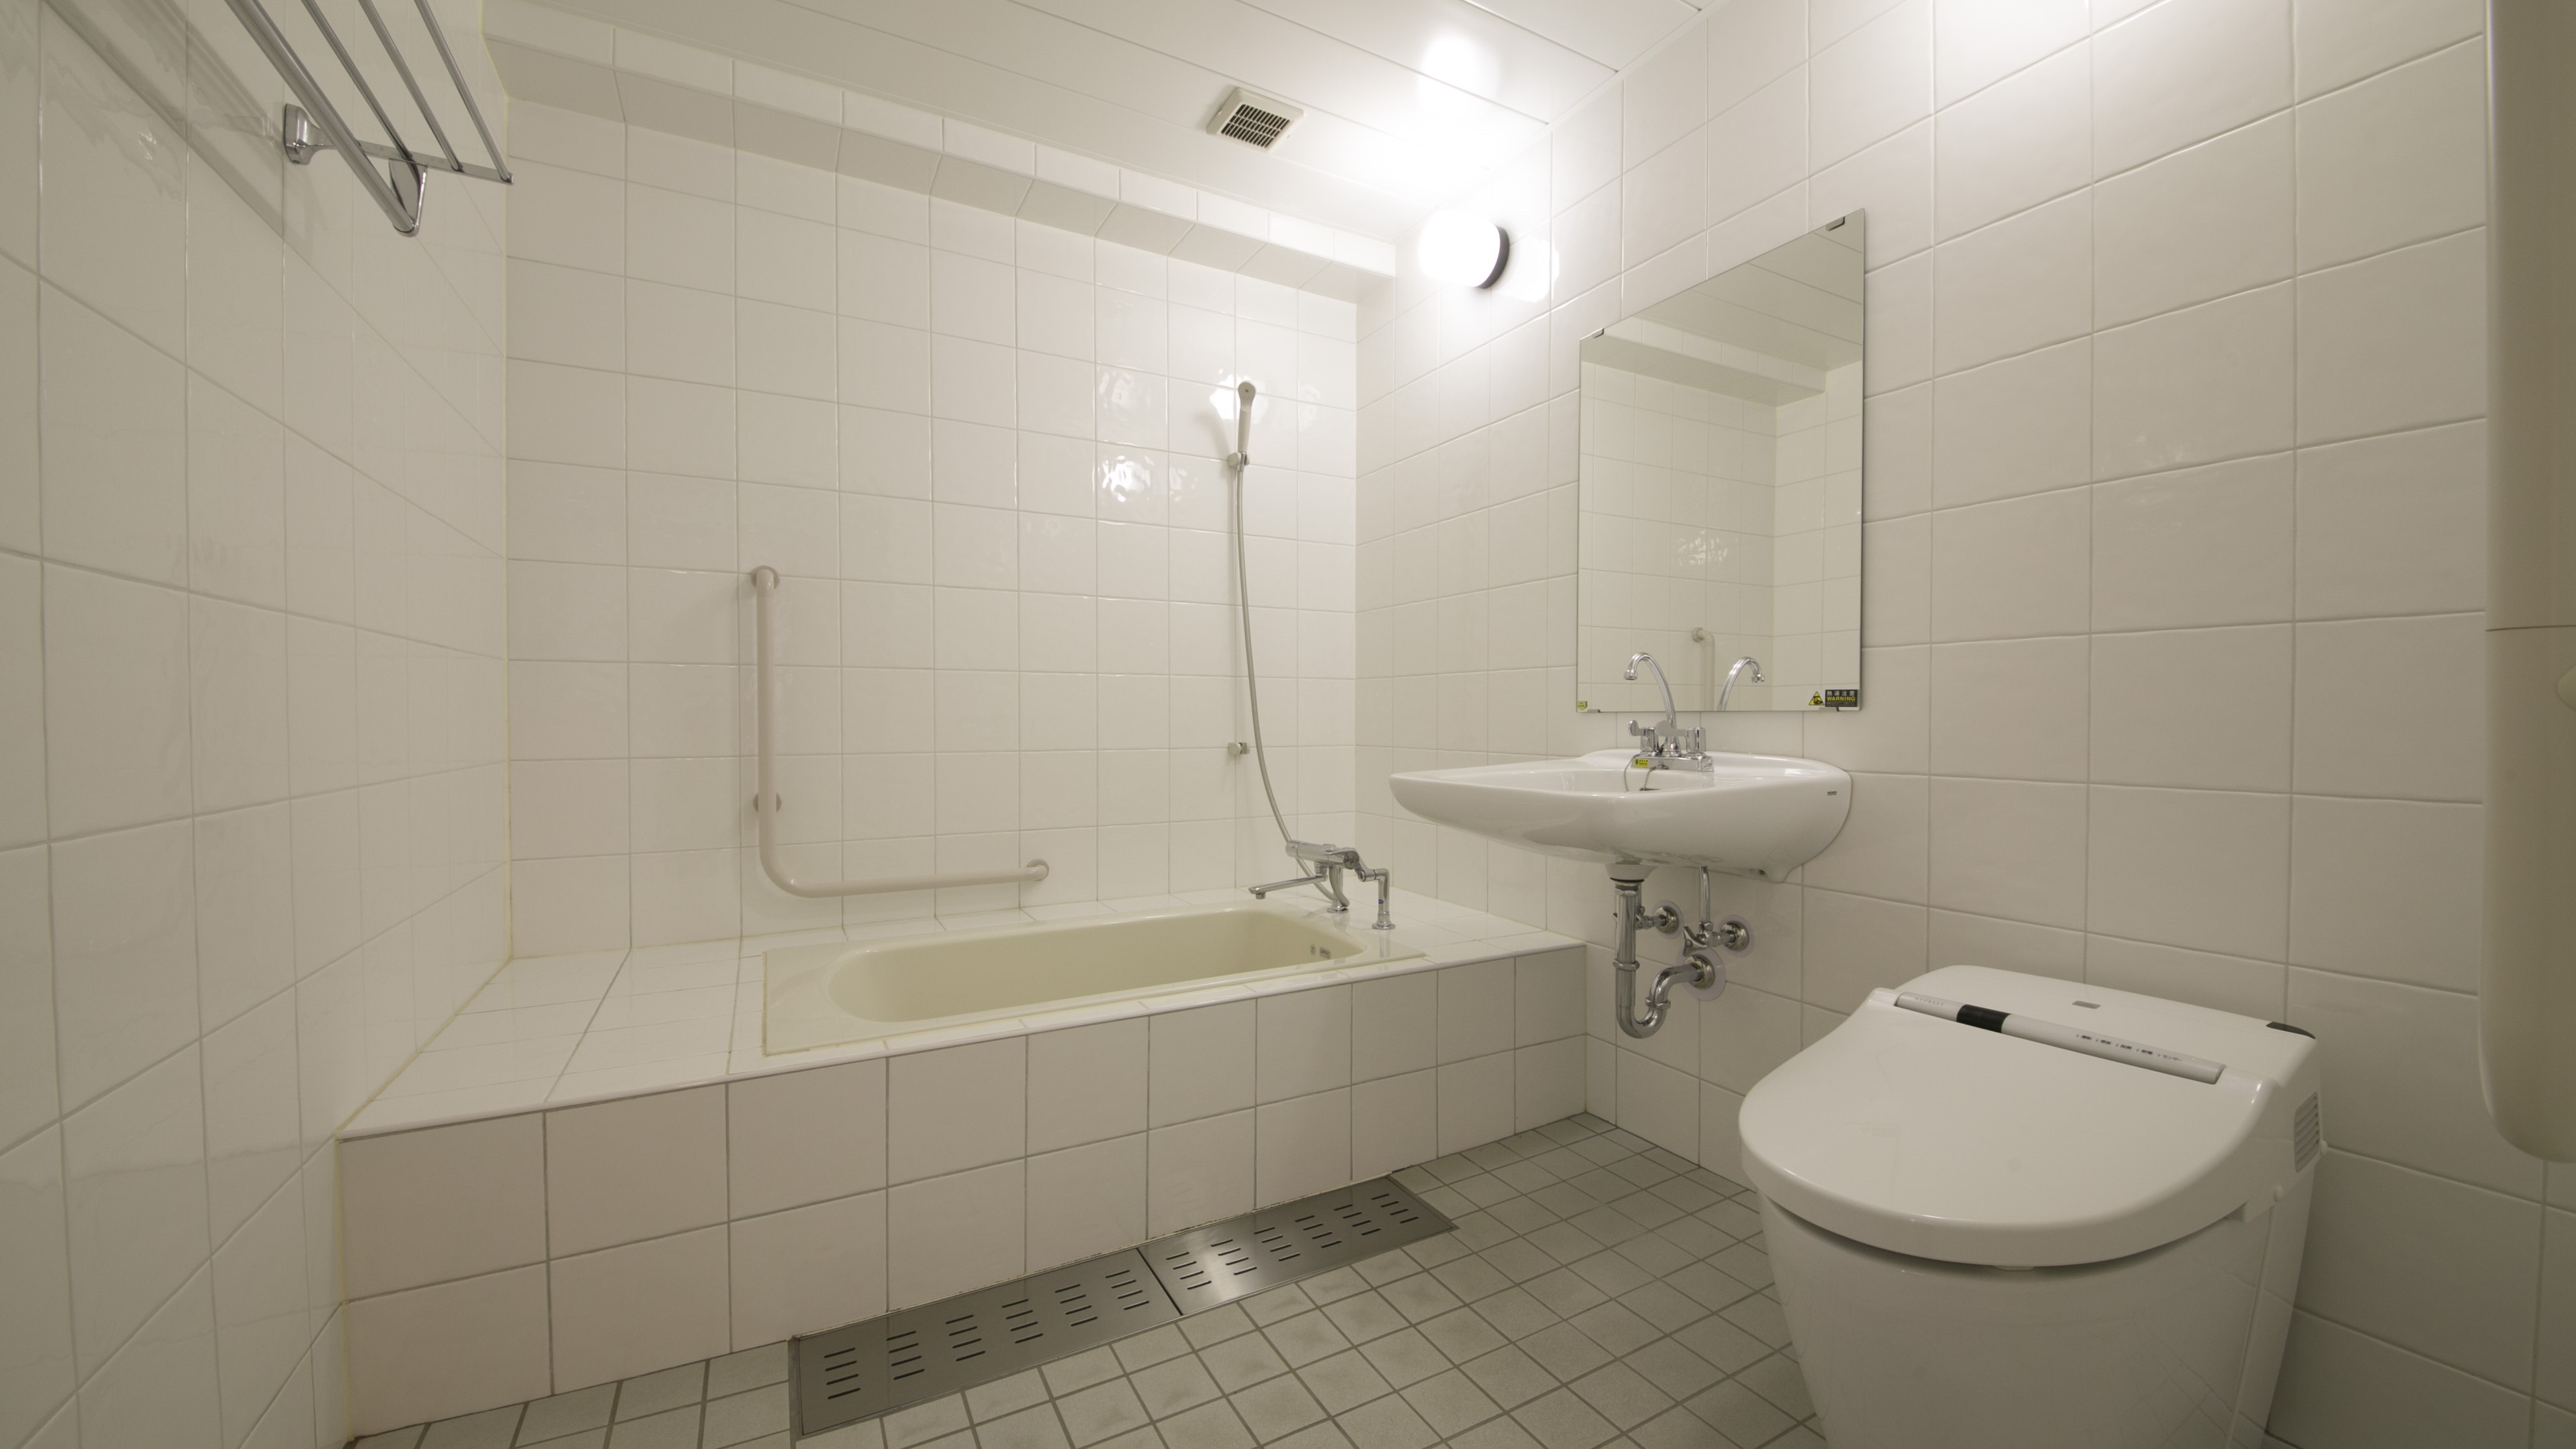 【ユニバーサルルーム浴室】バリアフリーのお風呂